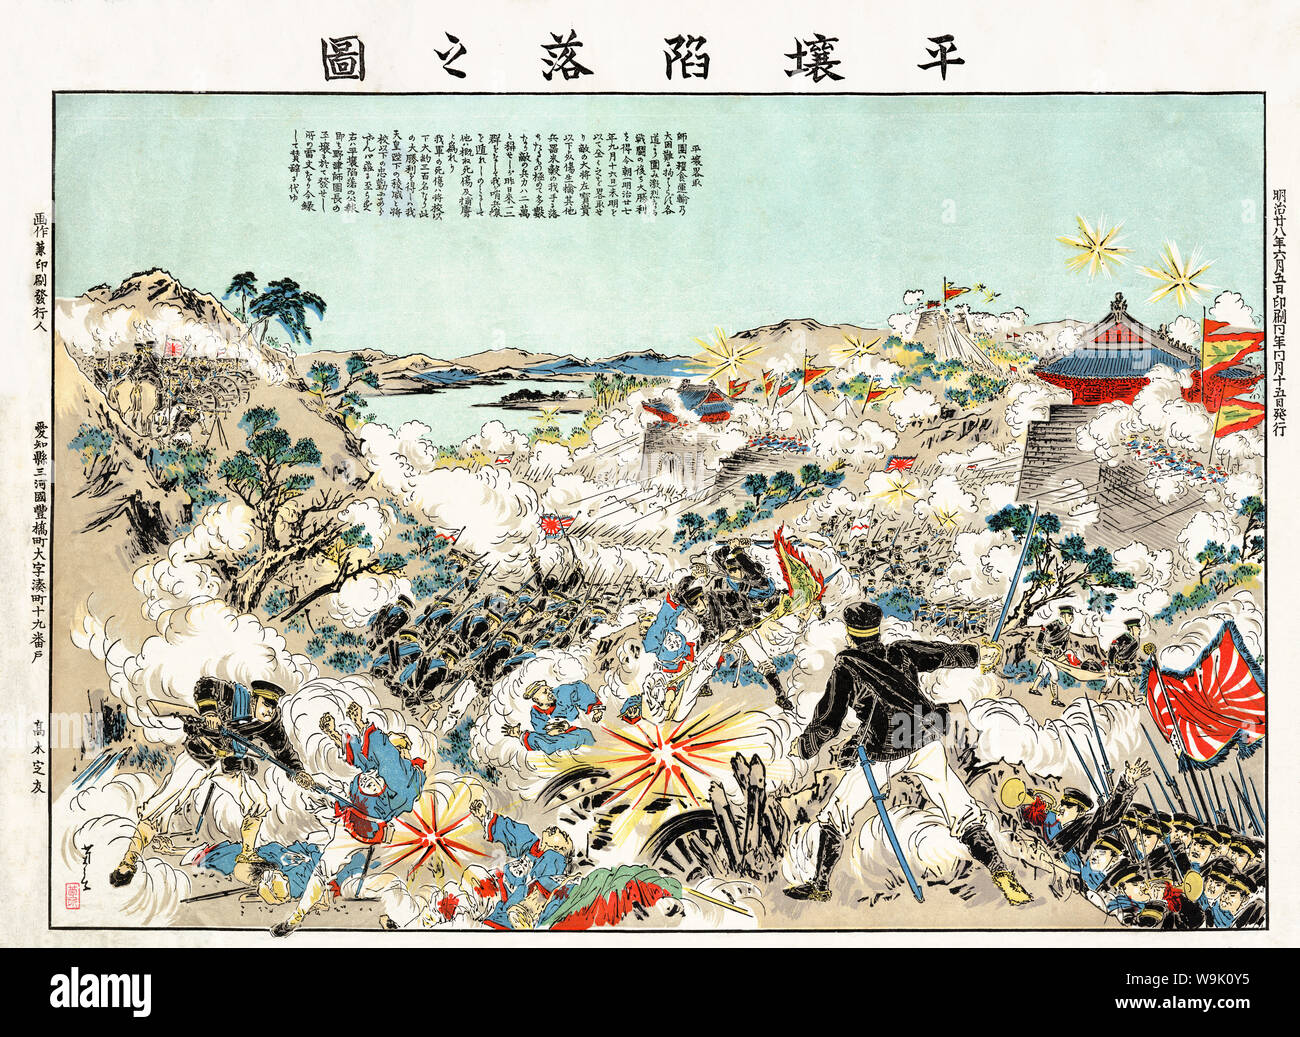 [ 1890 Japon - Première guerre sino-japonaise, 1894-1895 ] - Bataille de Pyongyang (平壌陷落之図, Pyongyang Kanraku no Zu). Publié le 5 juin 1895 (28) L'ère Meiji. La bataille a eu lieu le 15 septembre 1894 (27) à Meiji Pyongyang, Corée, lorsque les forces japonaises ont attaqué une armée de la Chine des Qing. C'était la deuxième grande bataille terrestre de la première guerre sino-japonaise (1 août 1894-17 avril 1895). Banque D'Images